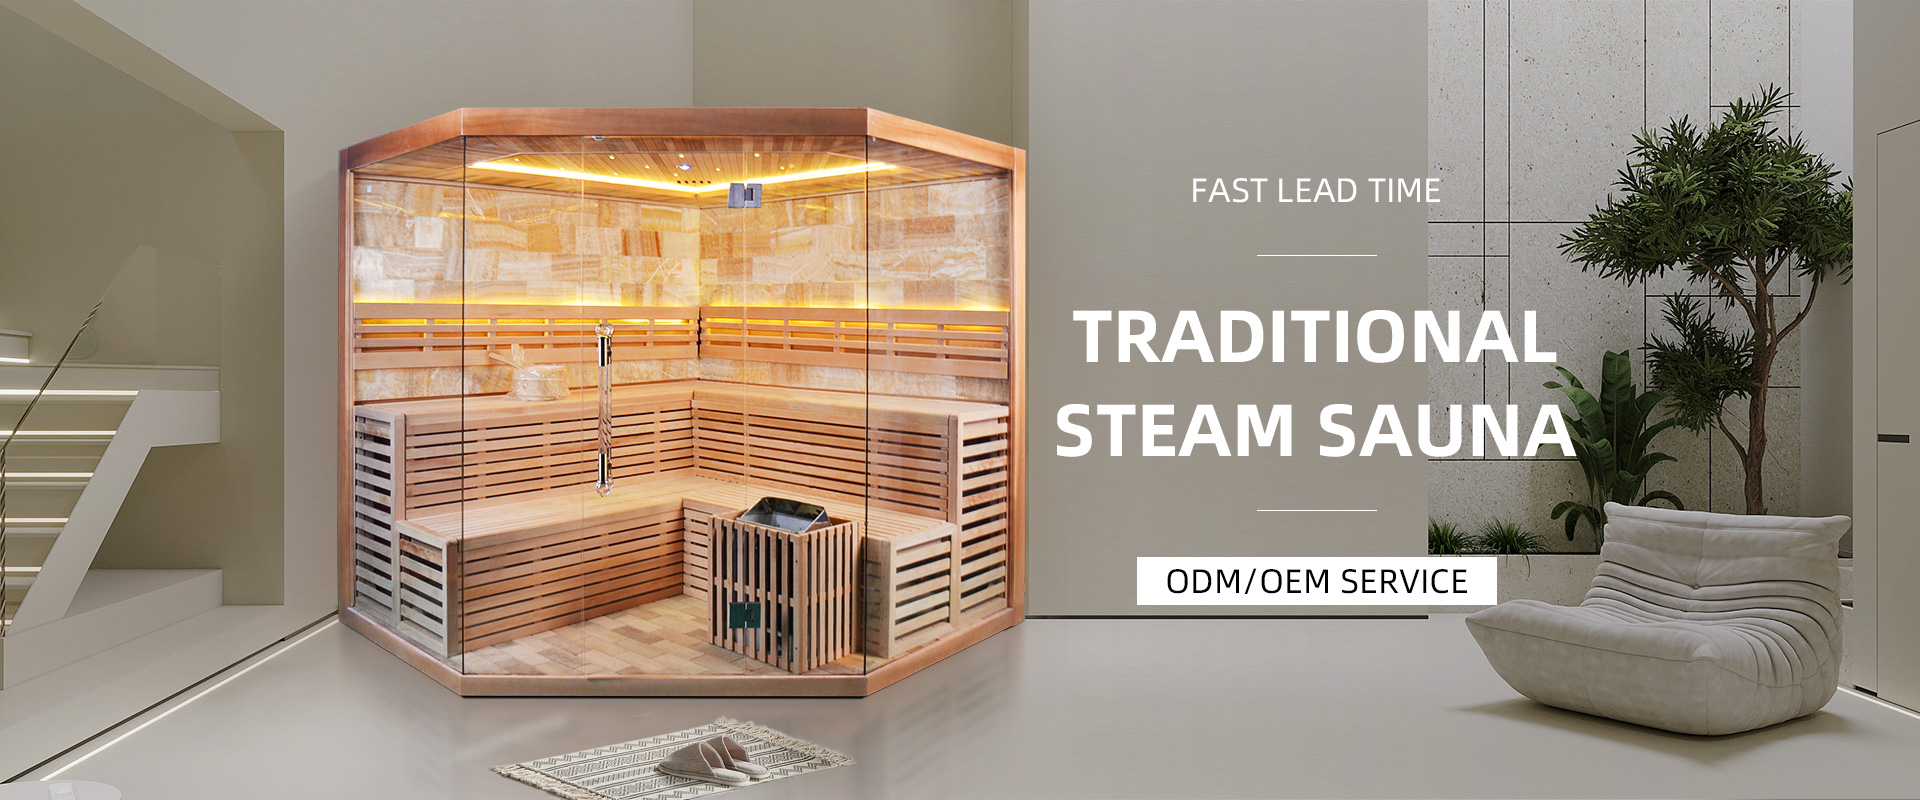 Steam Sauna Room